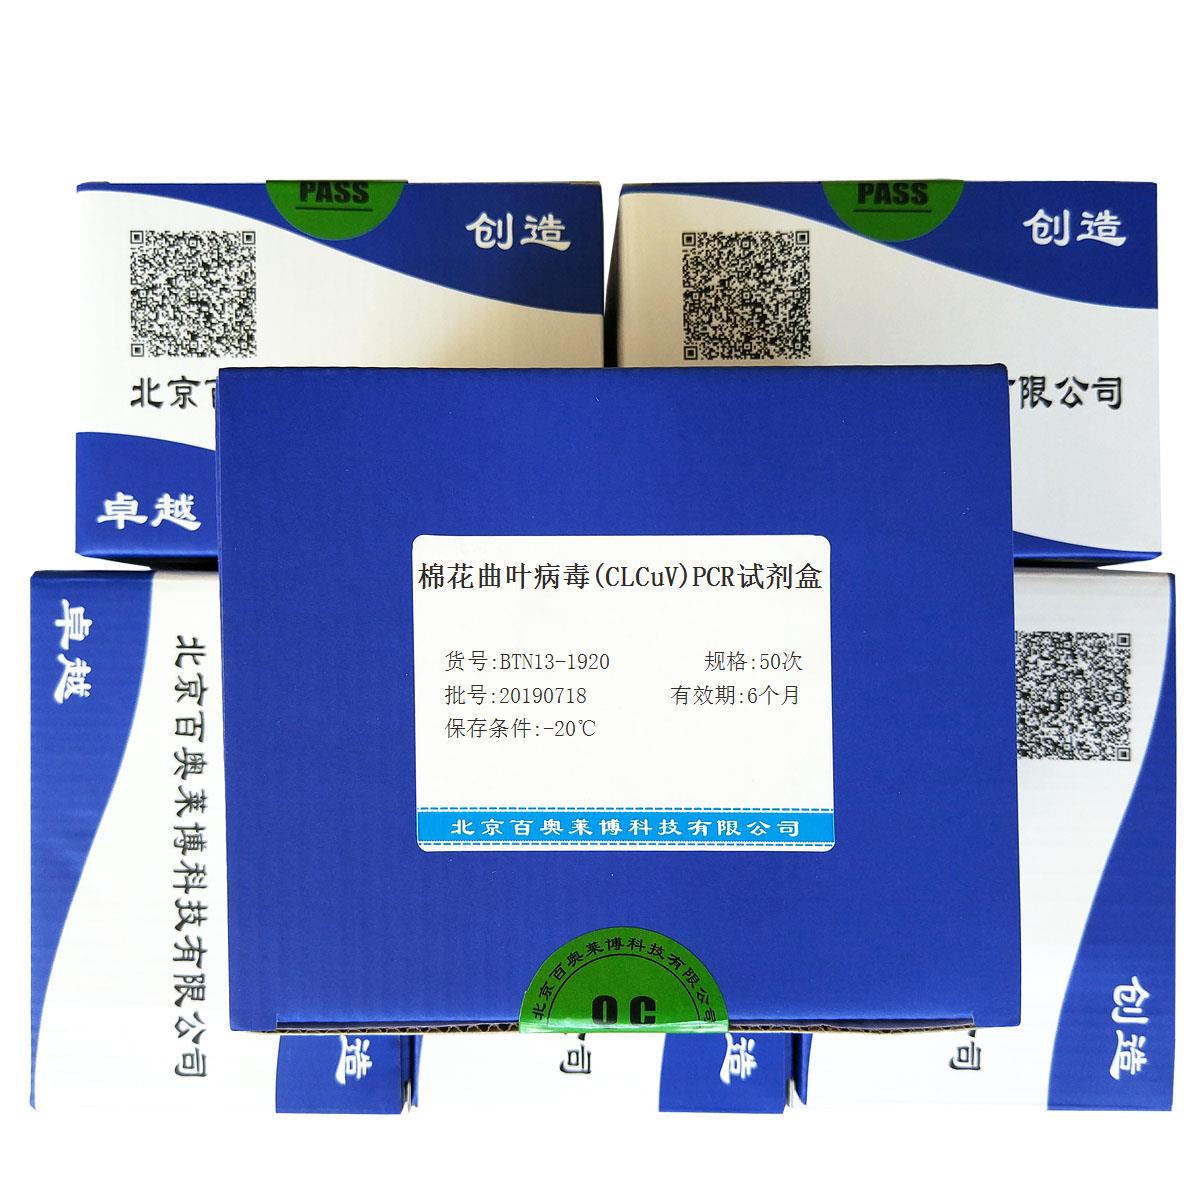 棉花曲叶病毒(CLCuV)PCR试剂盒北京供应商